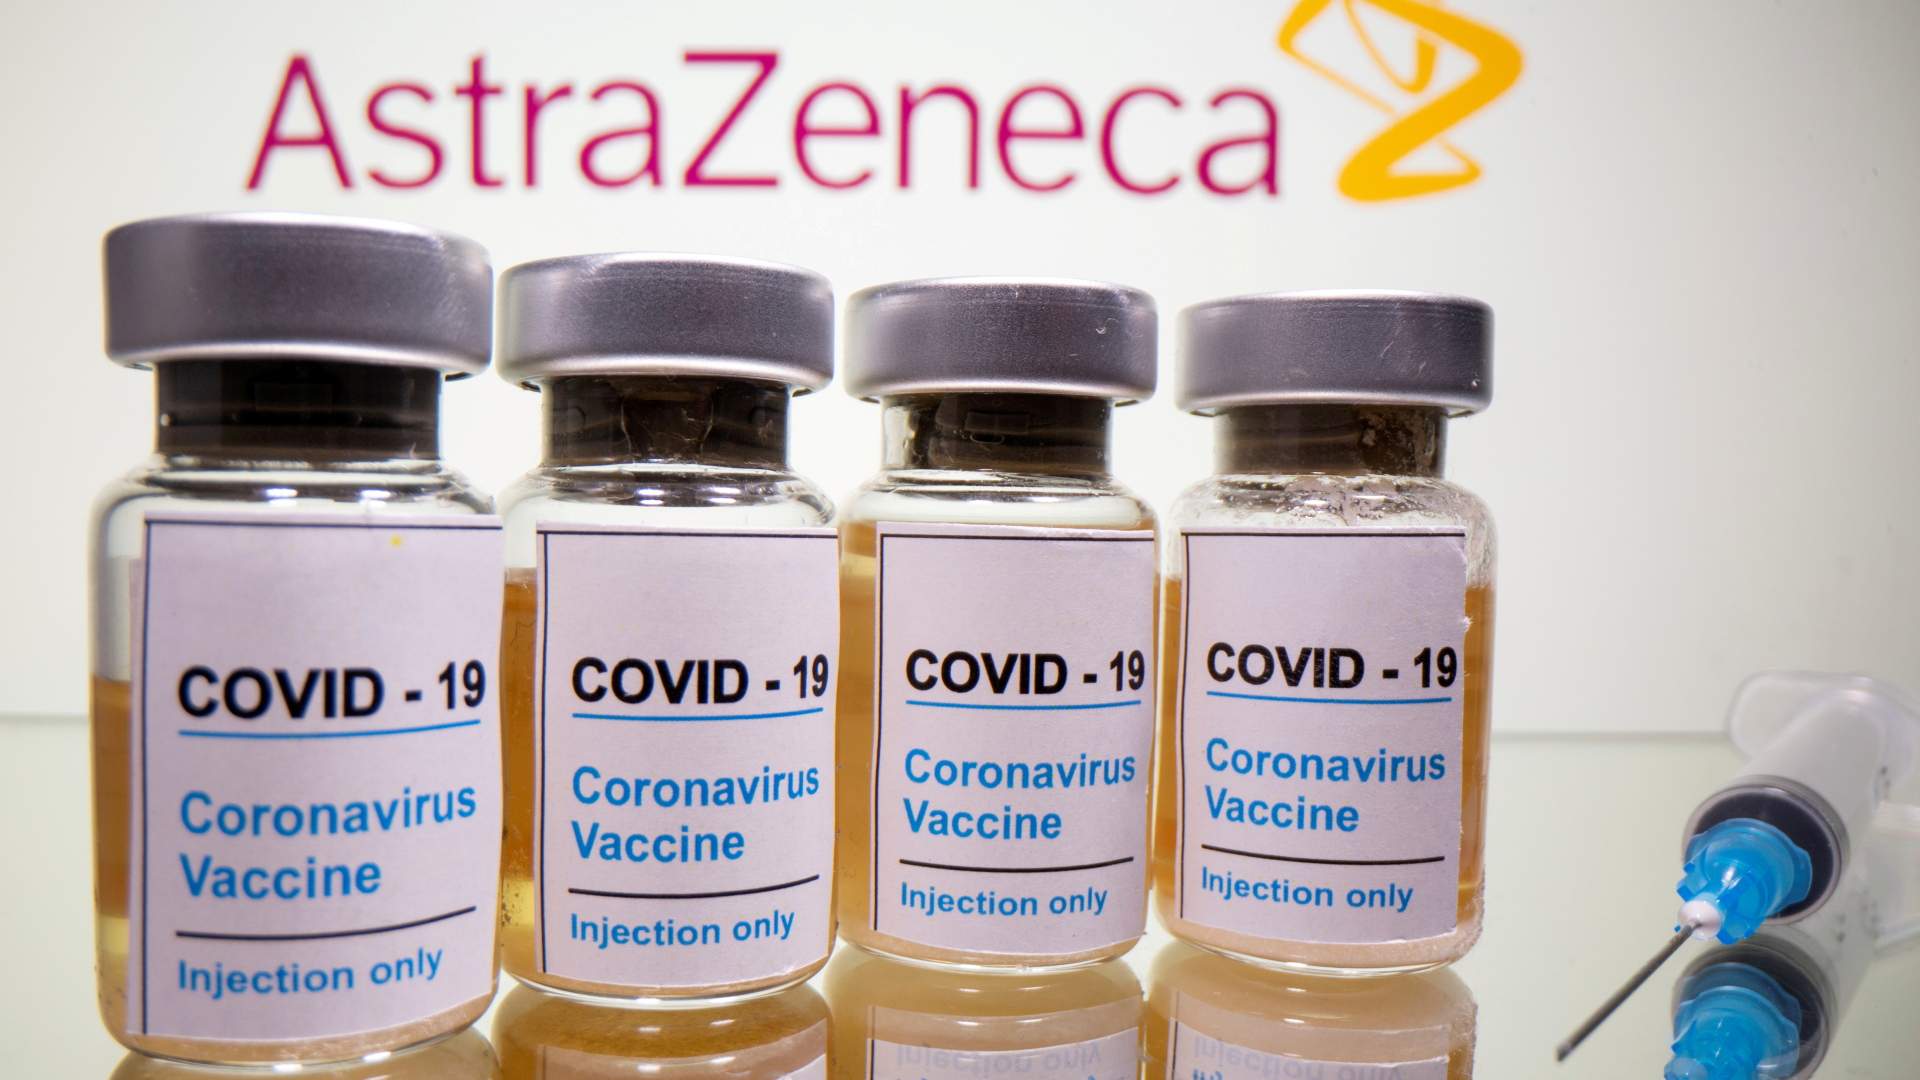 Fläschchen mit dem Impfstoff von AstraZeneca